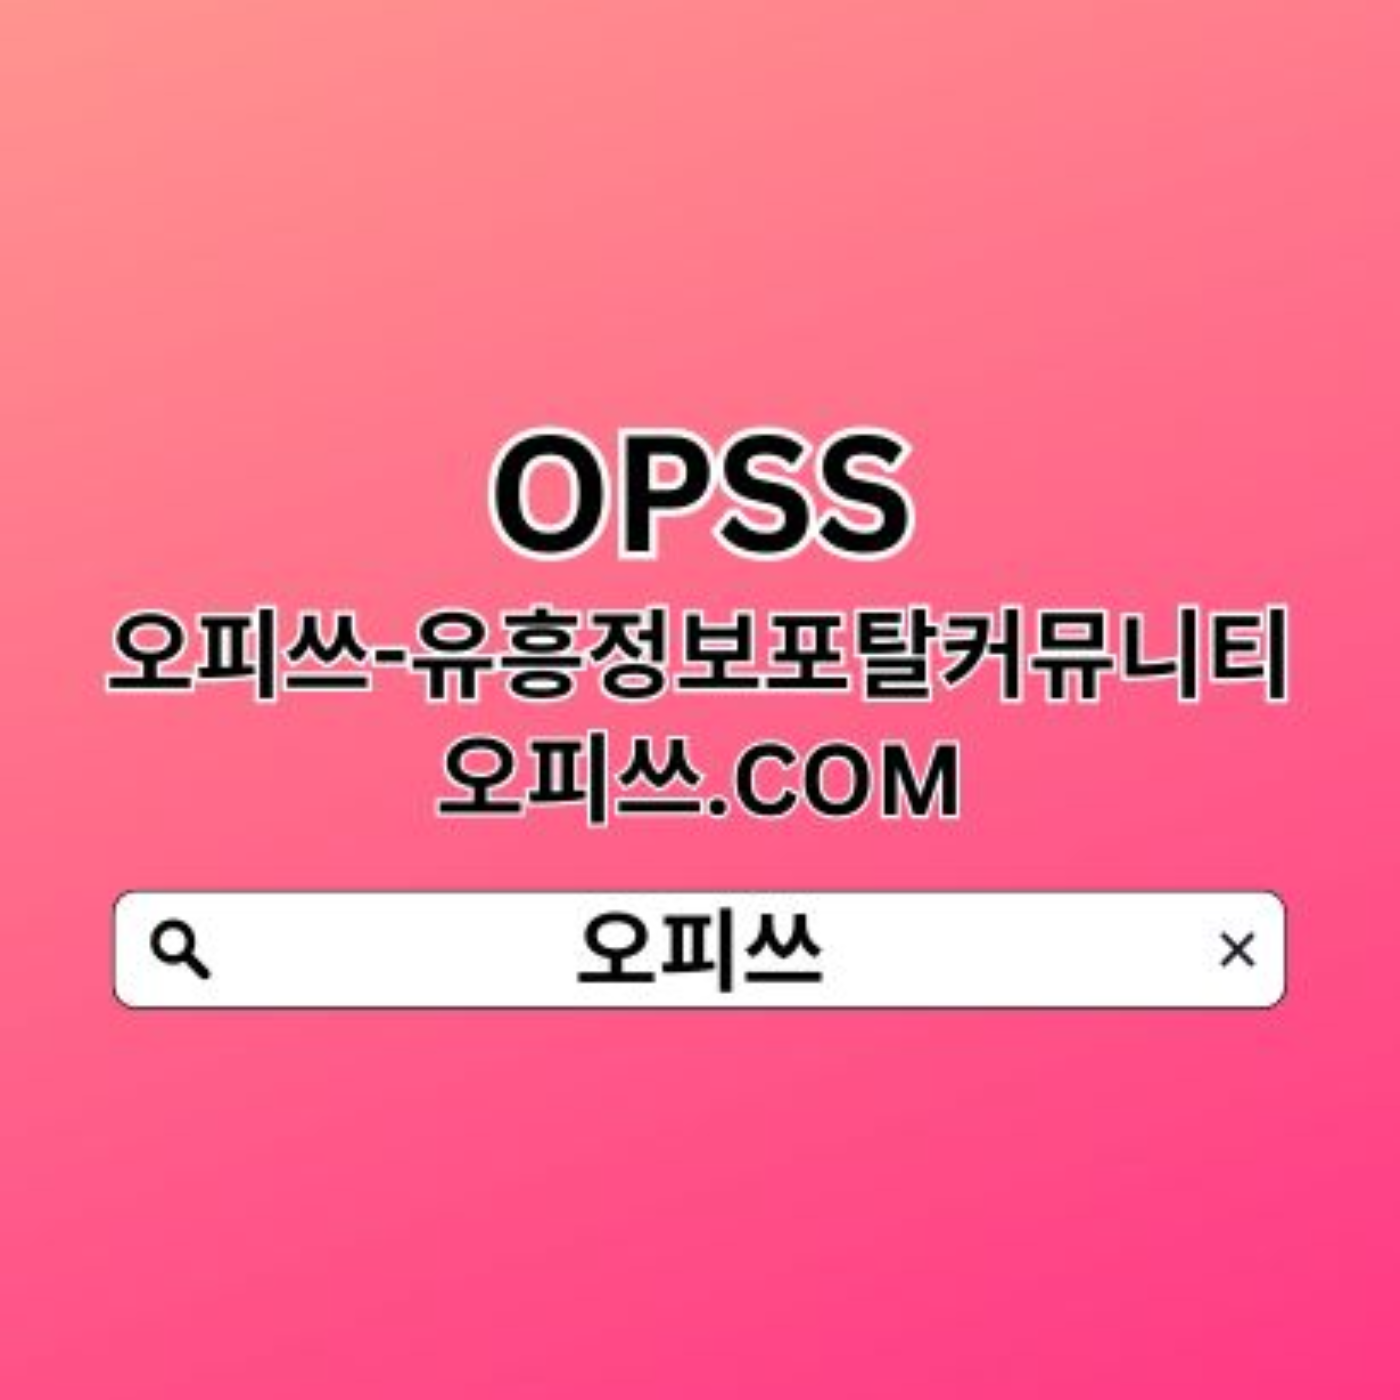 광주휴게텔 오피쓰.com 광주출장샵✧ 오피쓰 ✧광주안마ꗥ광주휴게텔✪광주휴게텔 광주OP